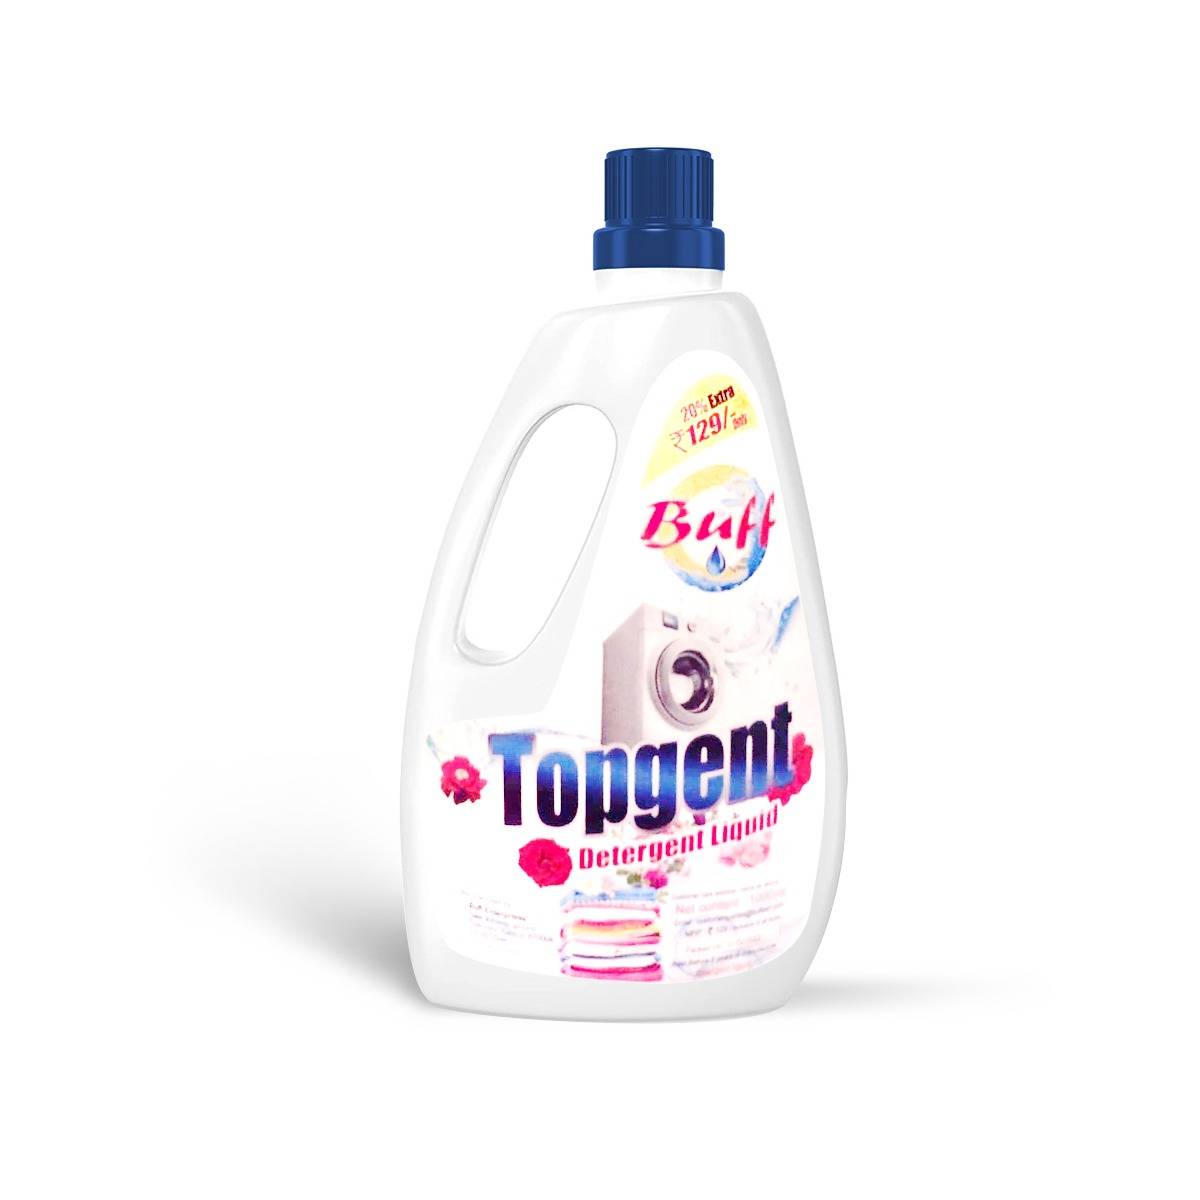 Buff Topgent Detergent Liquid 1Ltr